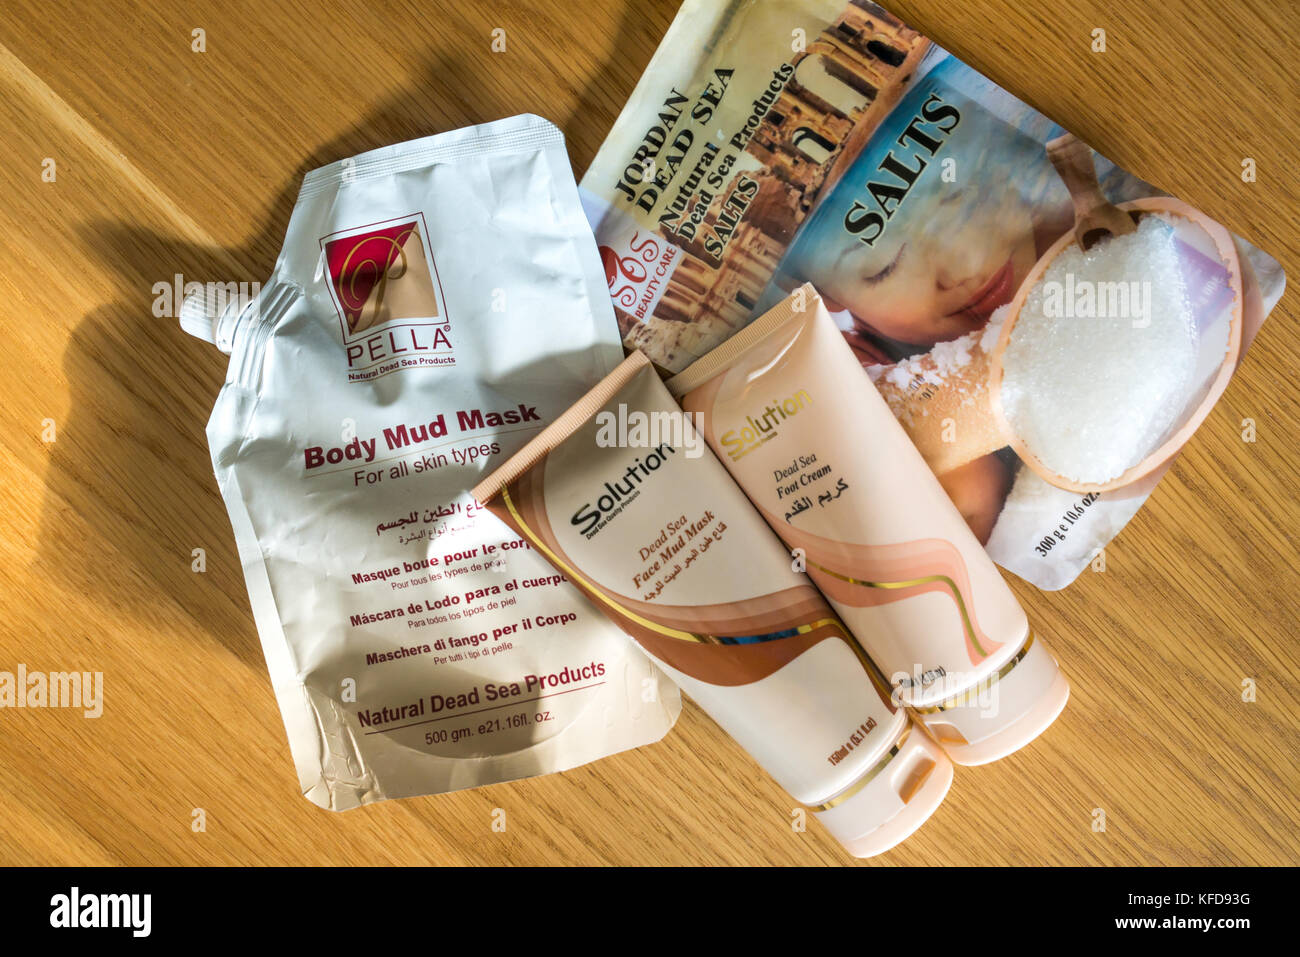 Souvenirs de vacances des produits cosmétiques de la Mer Morte, Jordanie, y compris des sels de bain, crème pour les pieds, le corps et le visage, masque de boue, masque de boue, Banque D'Images